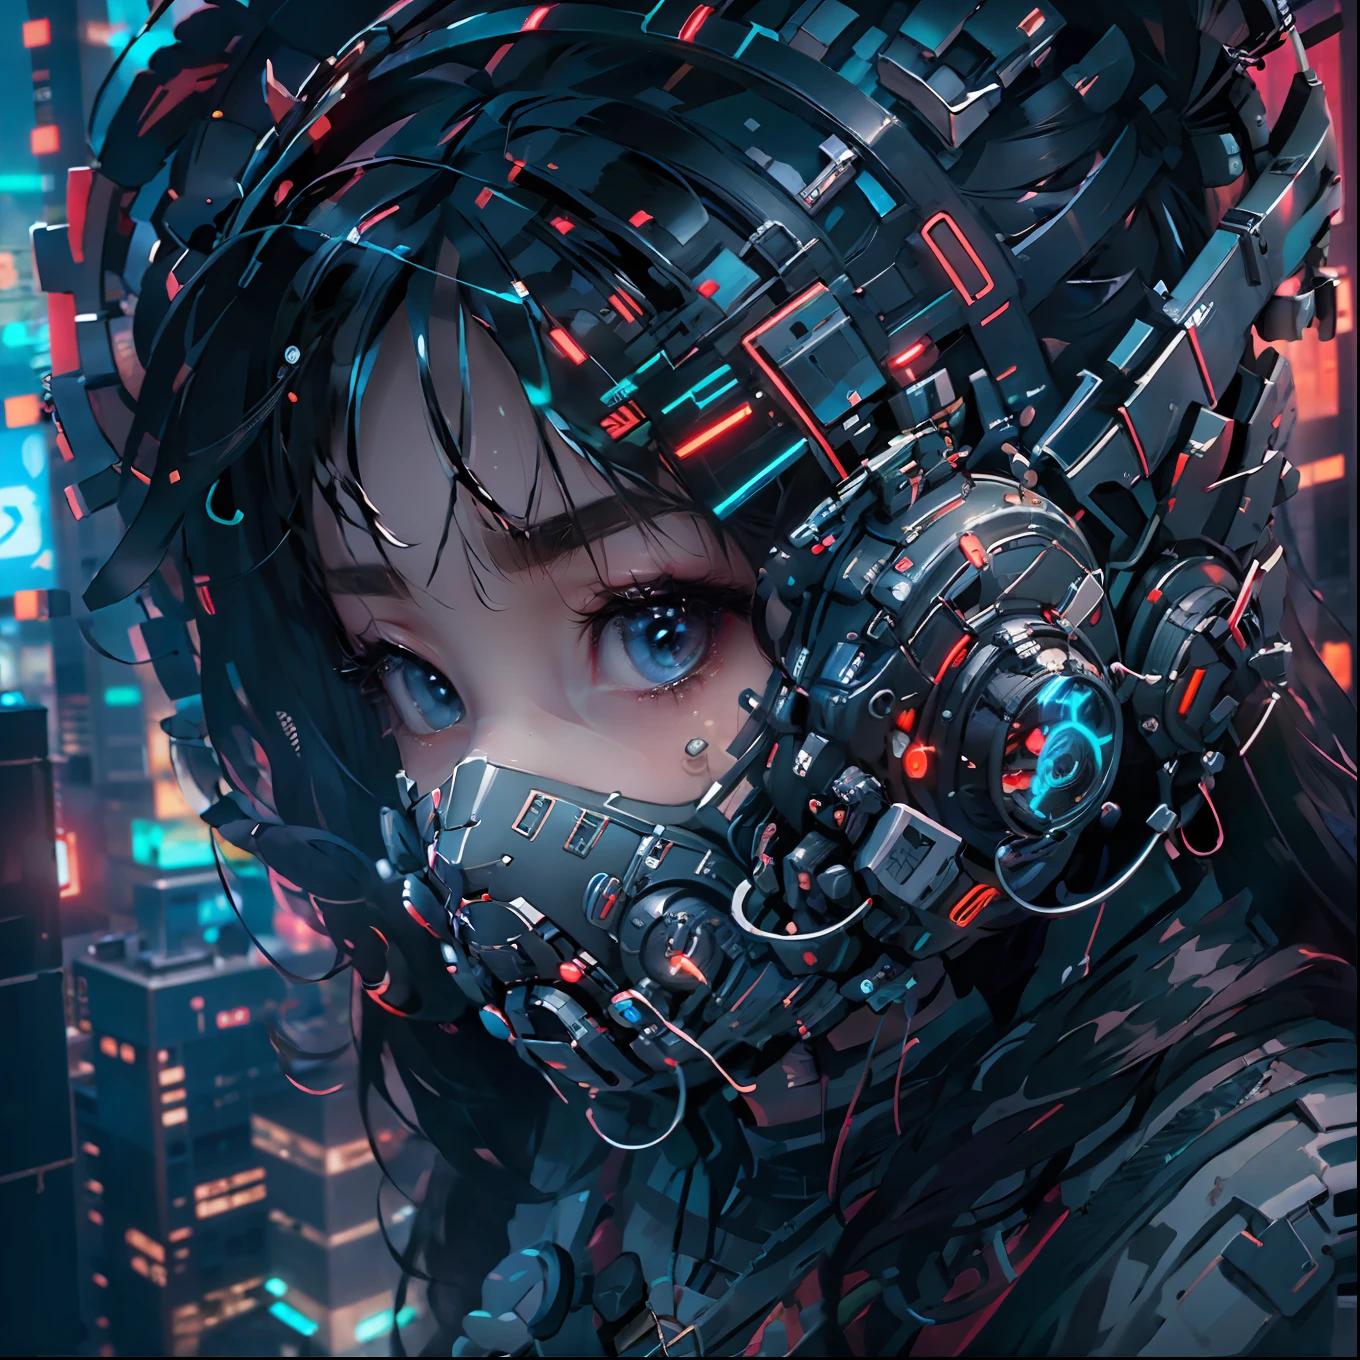 1девушка в детализированной неоновой маске киберпанка, ее лицо частично закрыто портьерой, запечатлено крупным планом сверху, на фоне яркого киберпанк-сити.